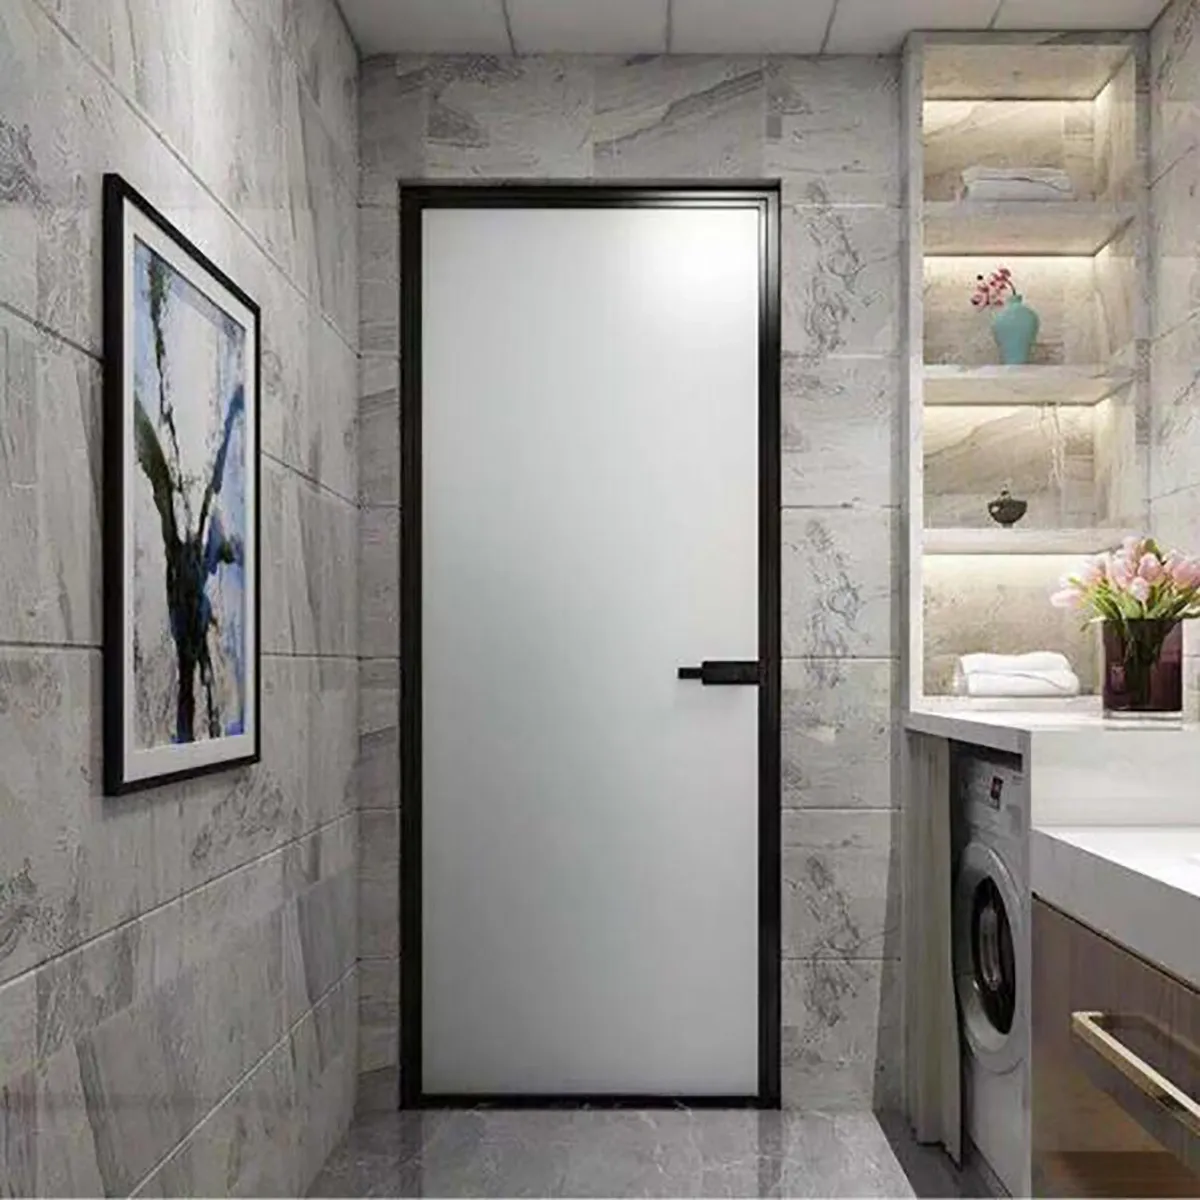 Mẫu cửa khung nhôm đơn giản mà tinh tế cho không gian phòng tắm hiện đại